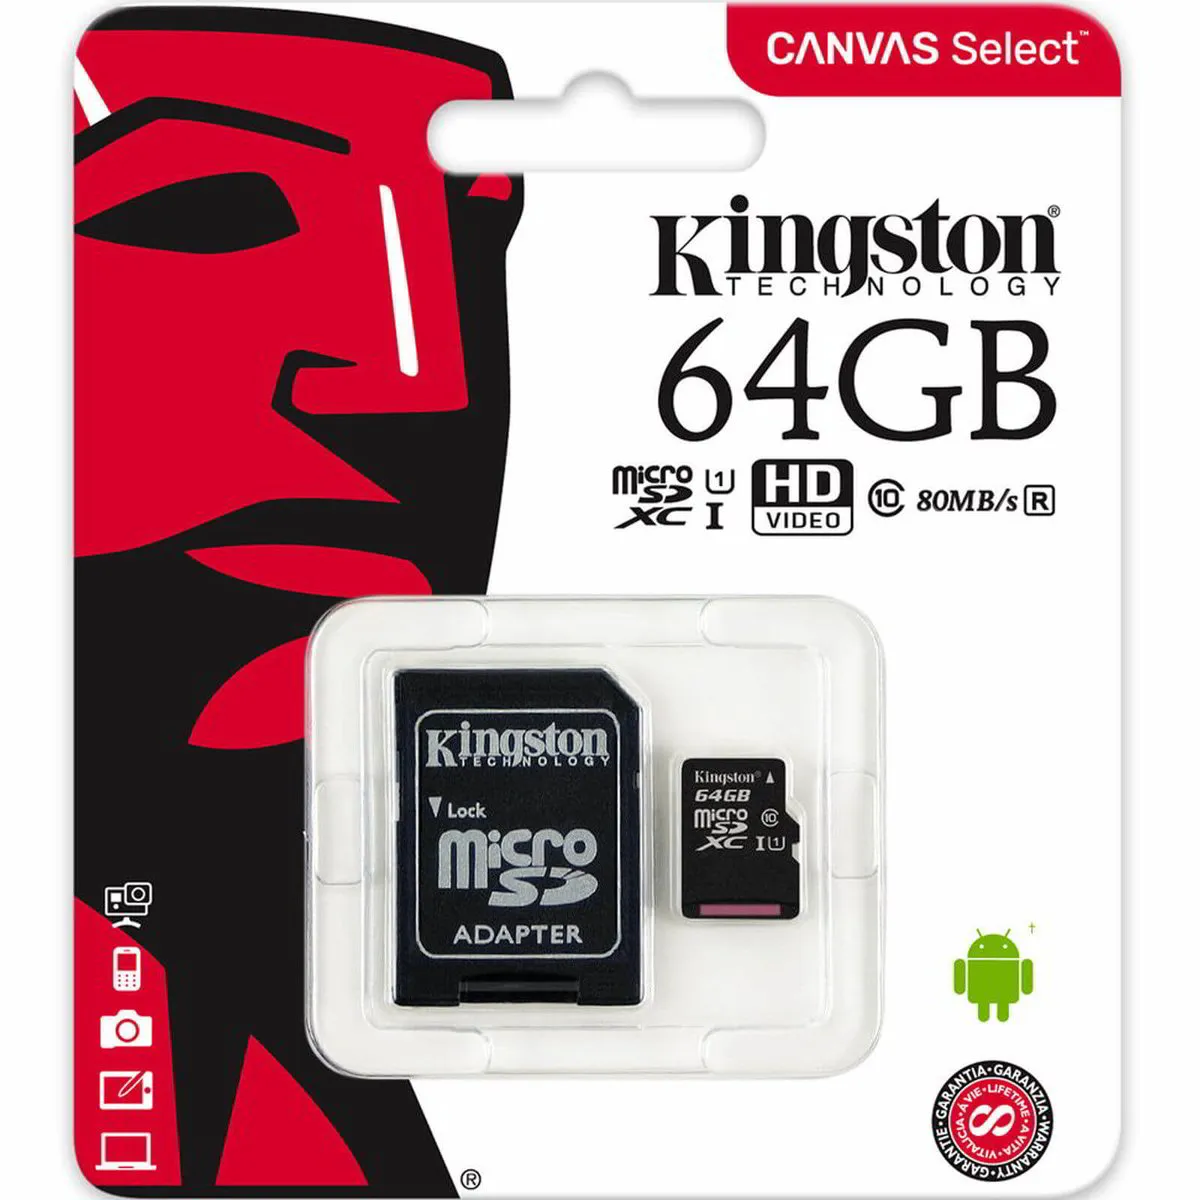 Kingston 64 GB Micro SD Card